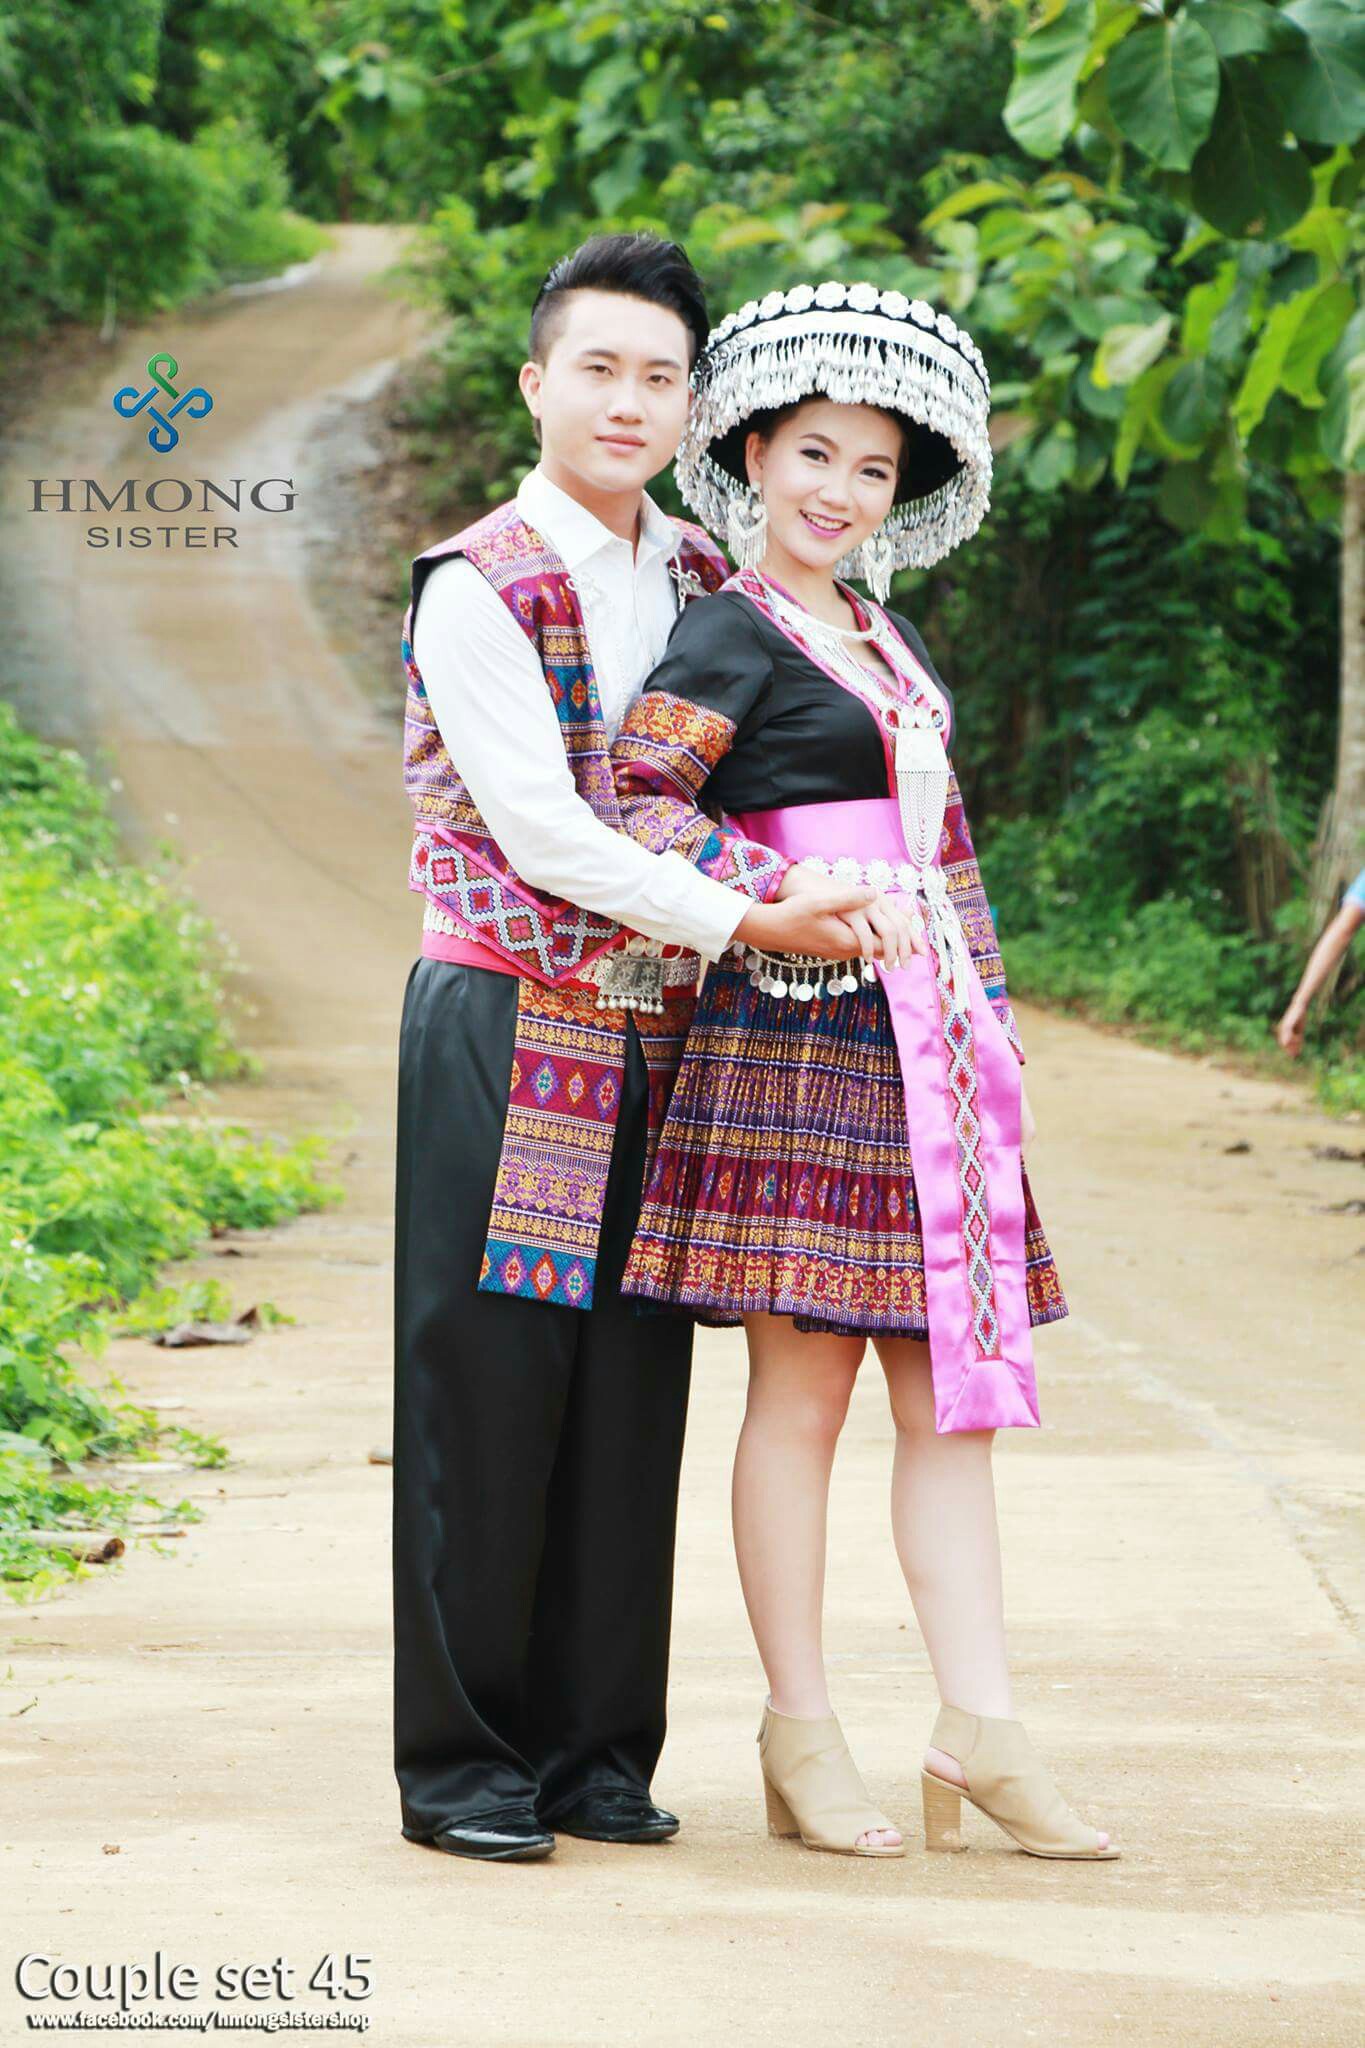 泰国苗族服装最新情侣款,女装款服装 帽子,其它不包括套餐内.